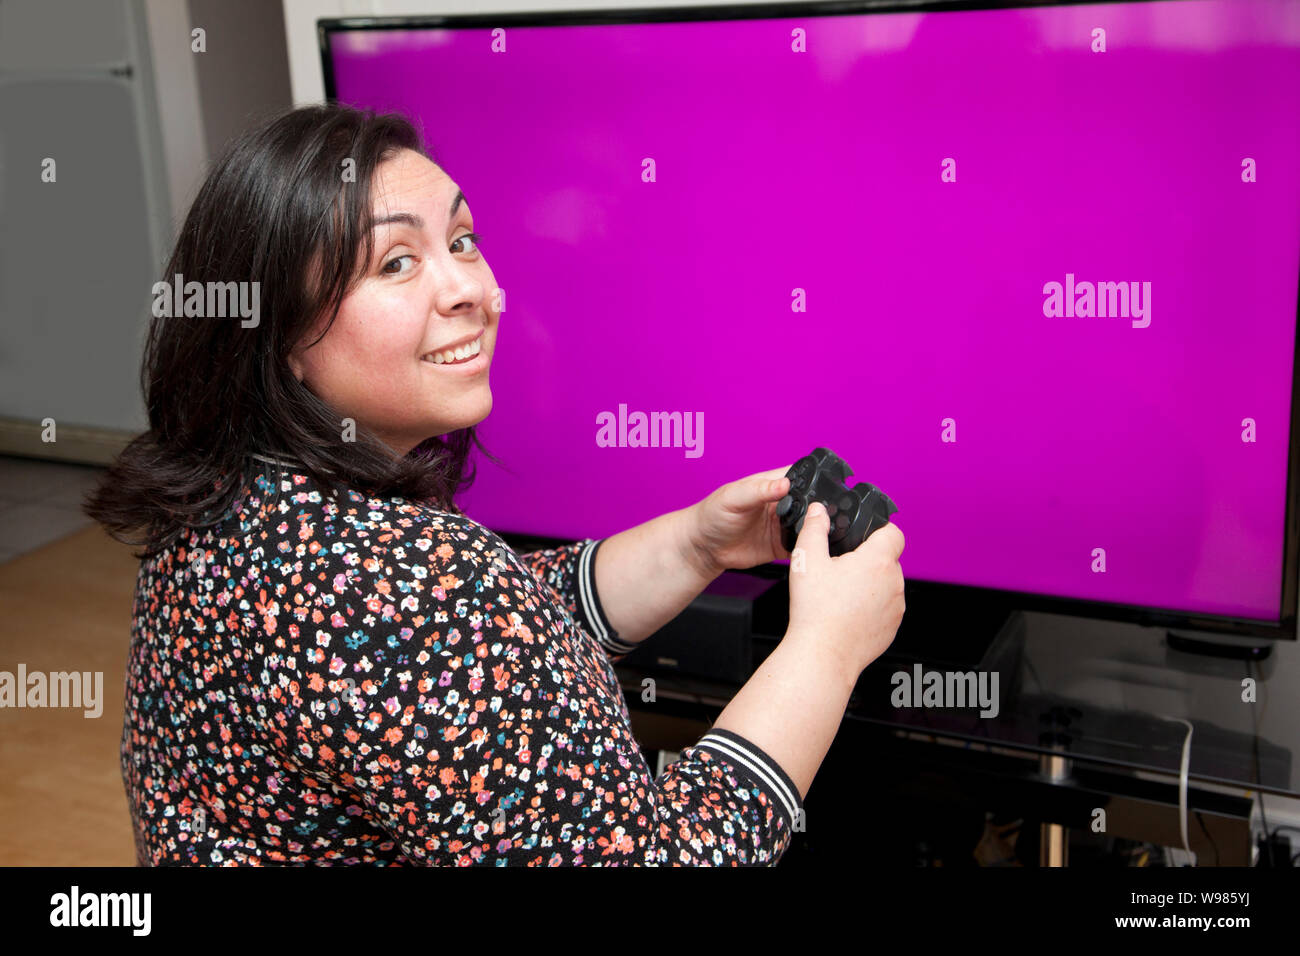 En face d'un écran blanc avec copie espace, une personne est à la recherche à l'épaule en souriant tout en ayant un bon temps à jouer aux jeux vidéo Banque D'Images